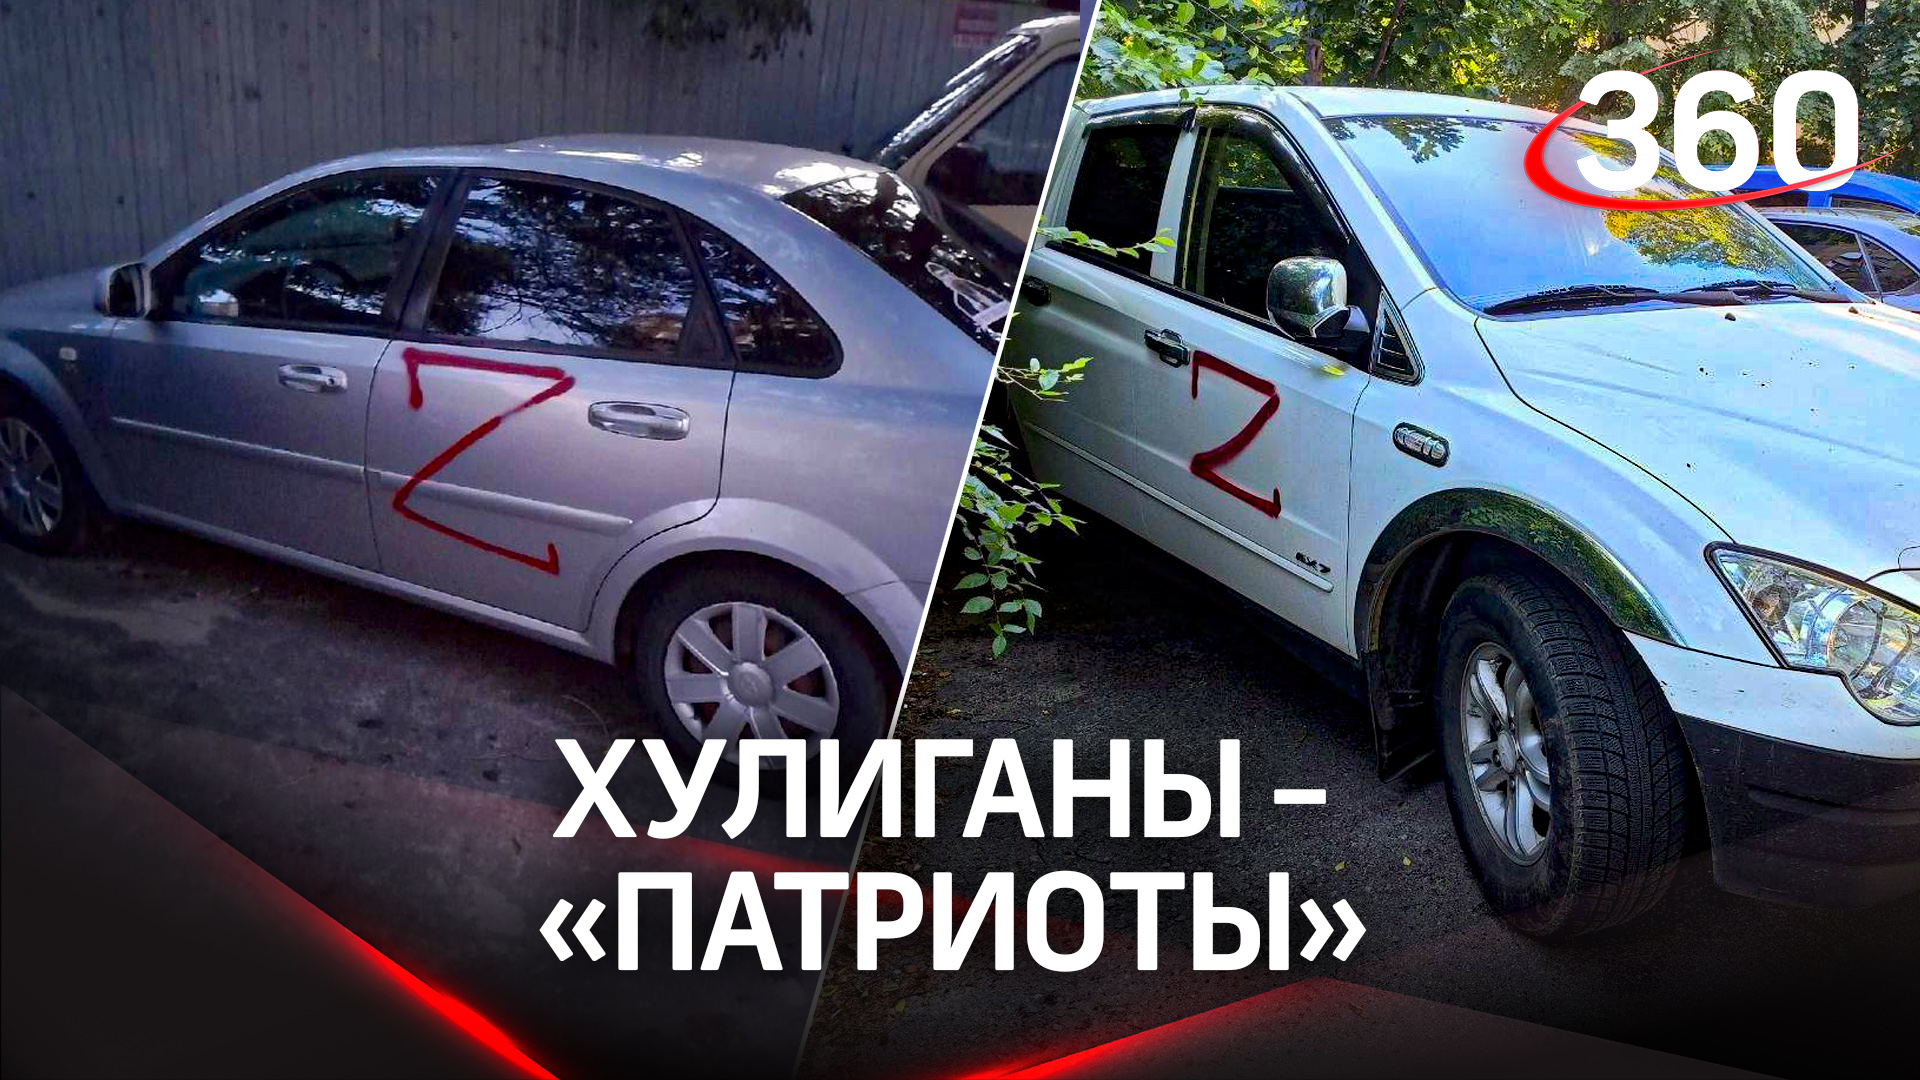 Пострадали более 100 автовладельцев - хулиганы разрисовали машины буквой Z в целом районе Воронежа